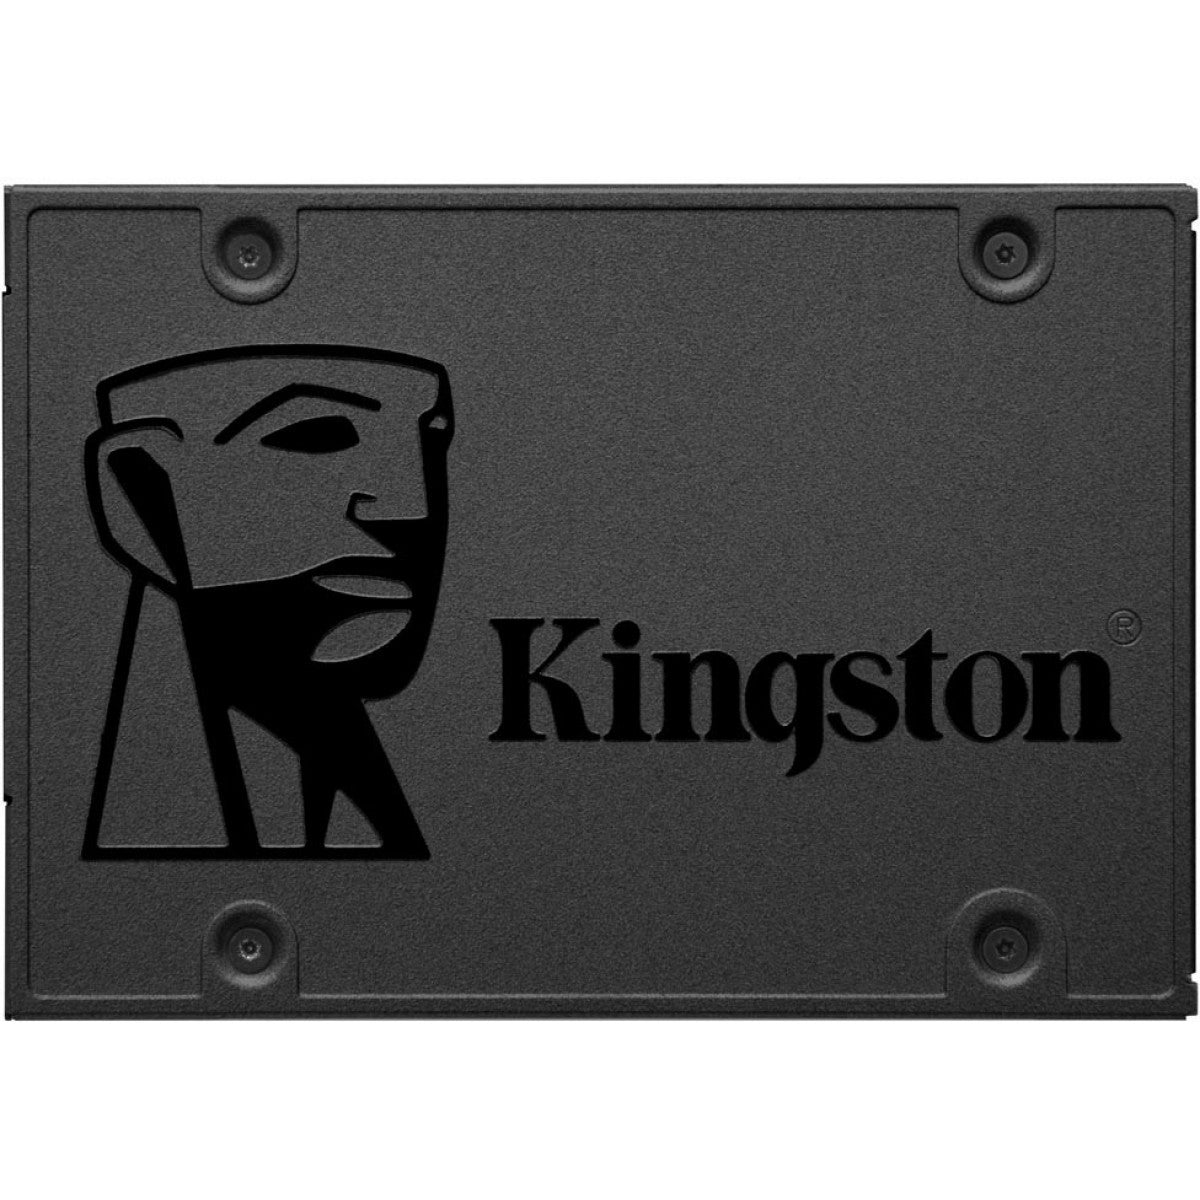 SSD Kingston A400, 480GB, Sata III, Leitura 500MBs Gravação 450MBs, SA400S37/480